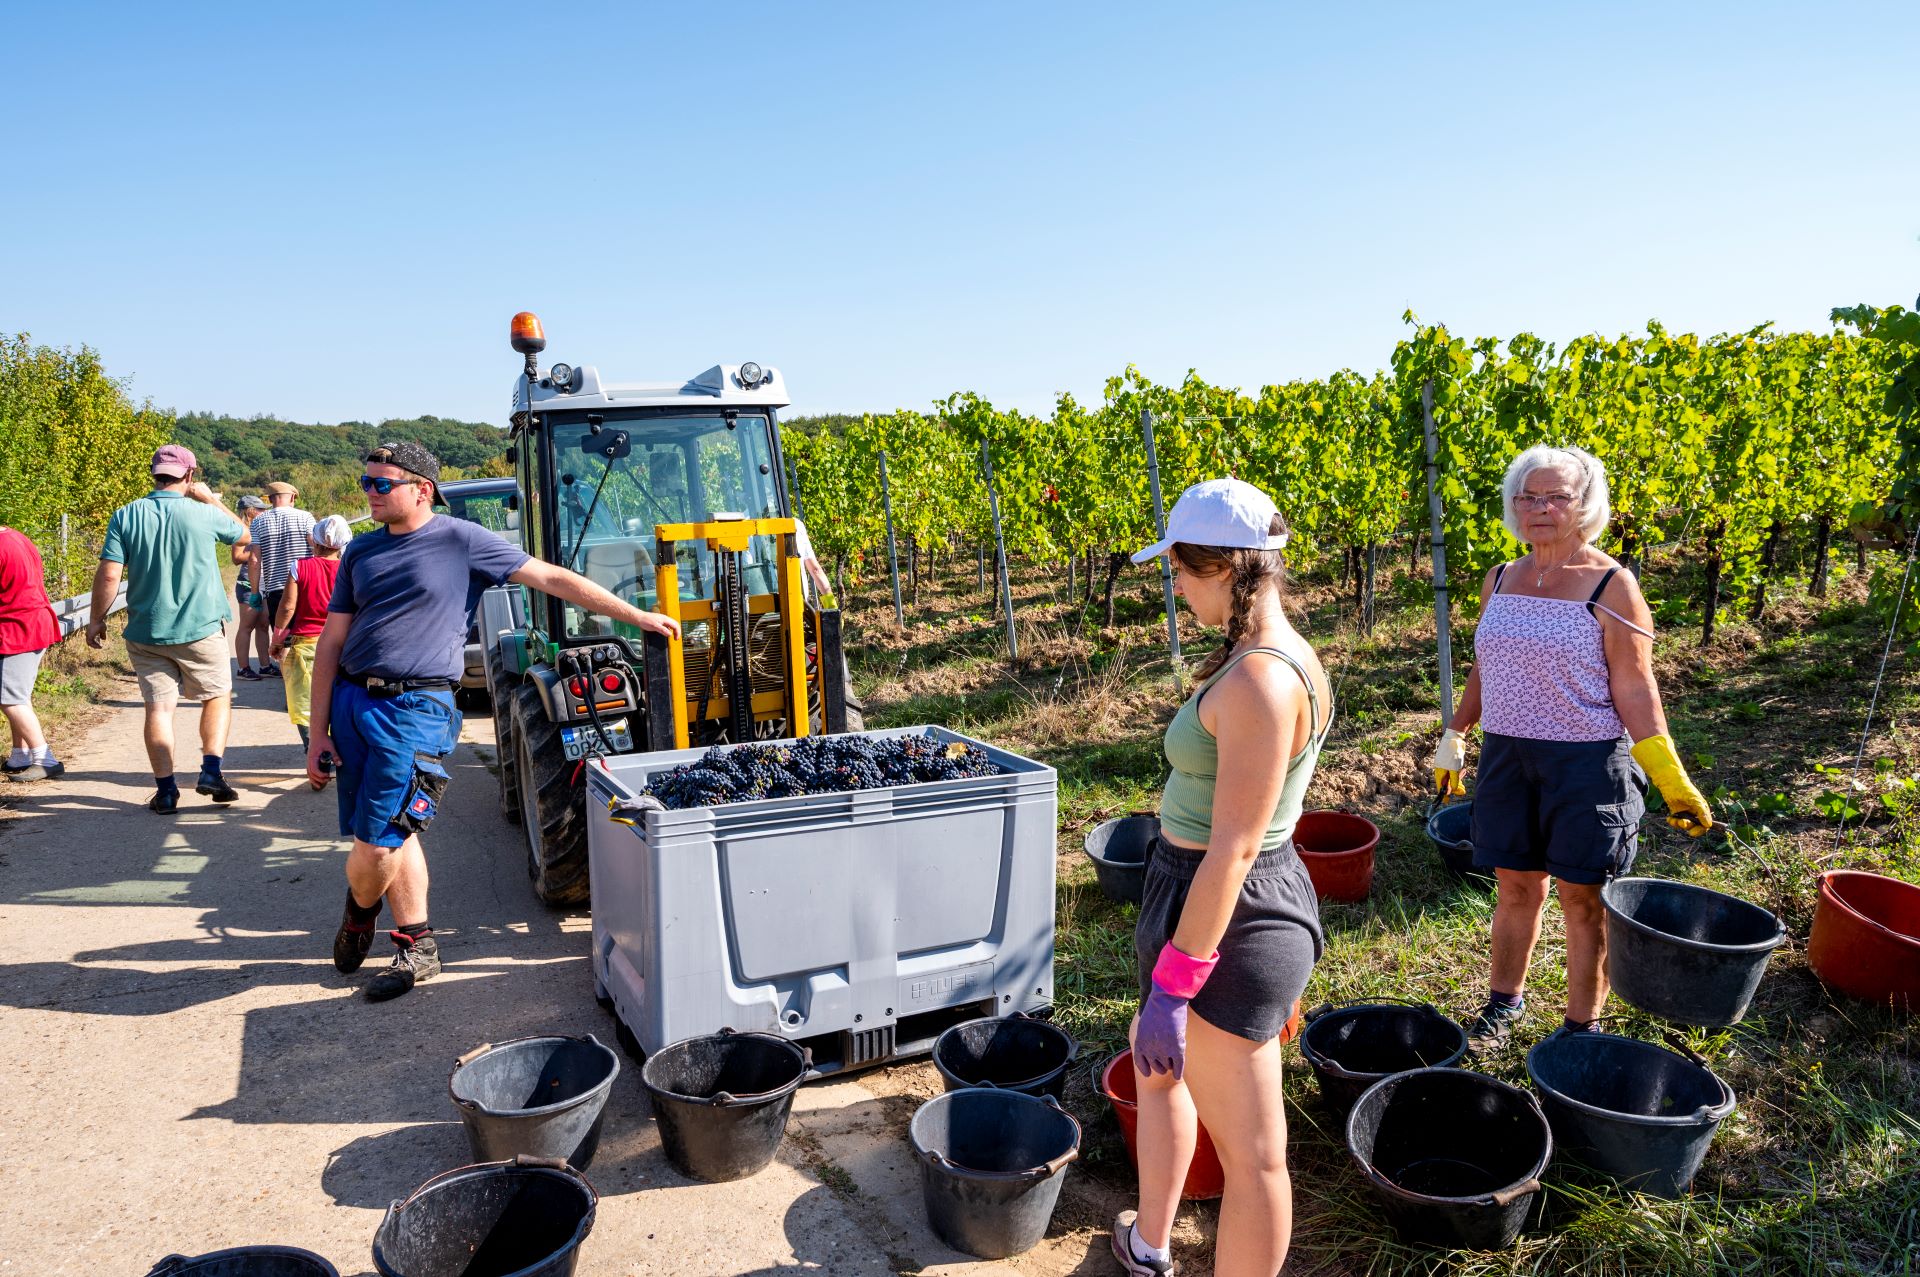 Die Arbeiter im Weinbau sind bei der Arbeit abgebildet. Ein Mann lehnt an einem Fahrzeug und hält Trauben in einem großen Behälter, während im Vordergrund Frauen mit Eimern stehen.